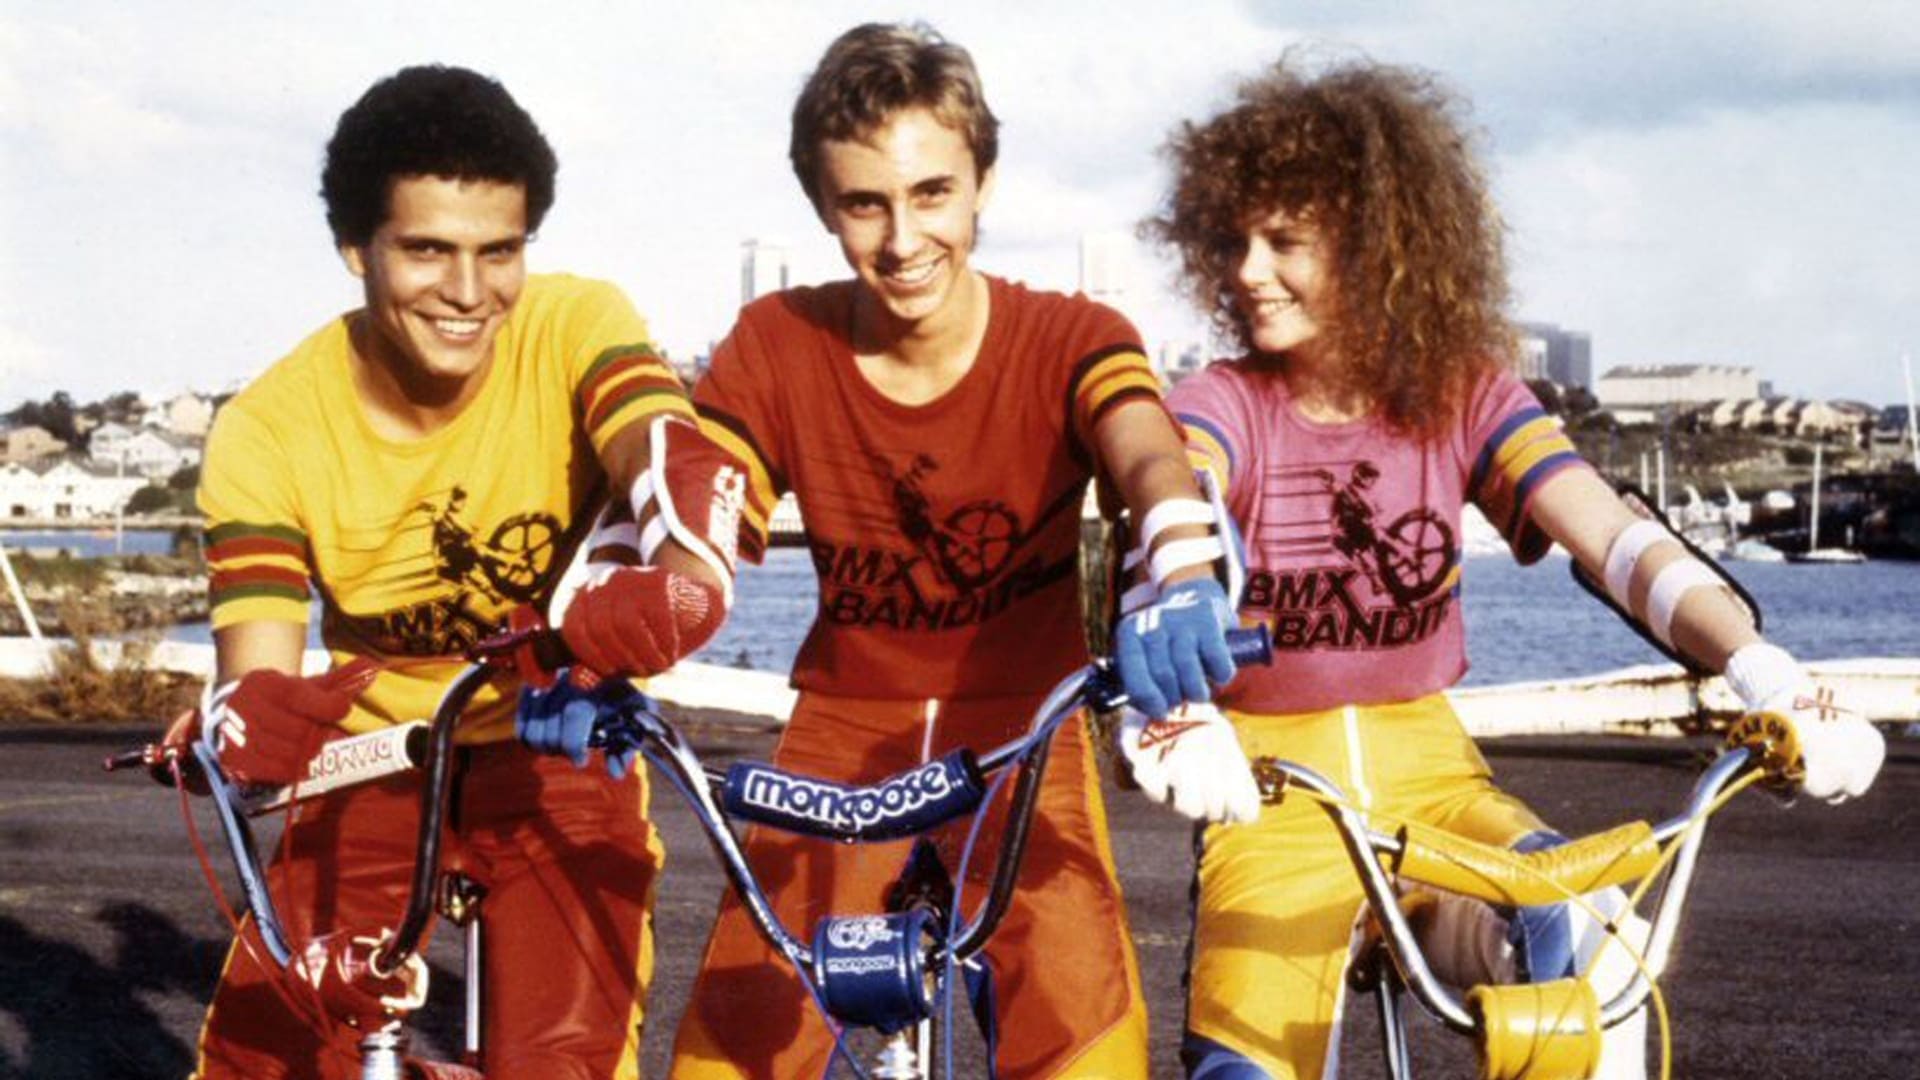 Le gang des BMX (1983)